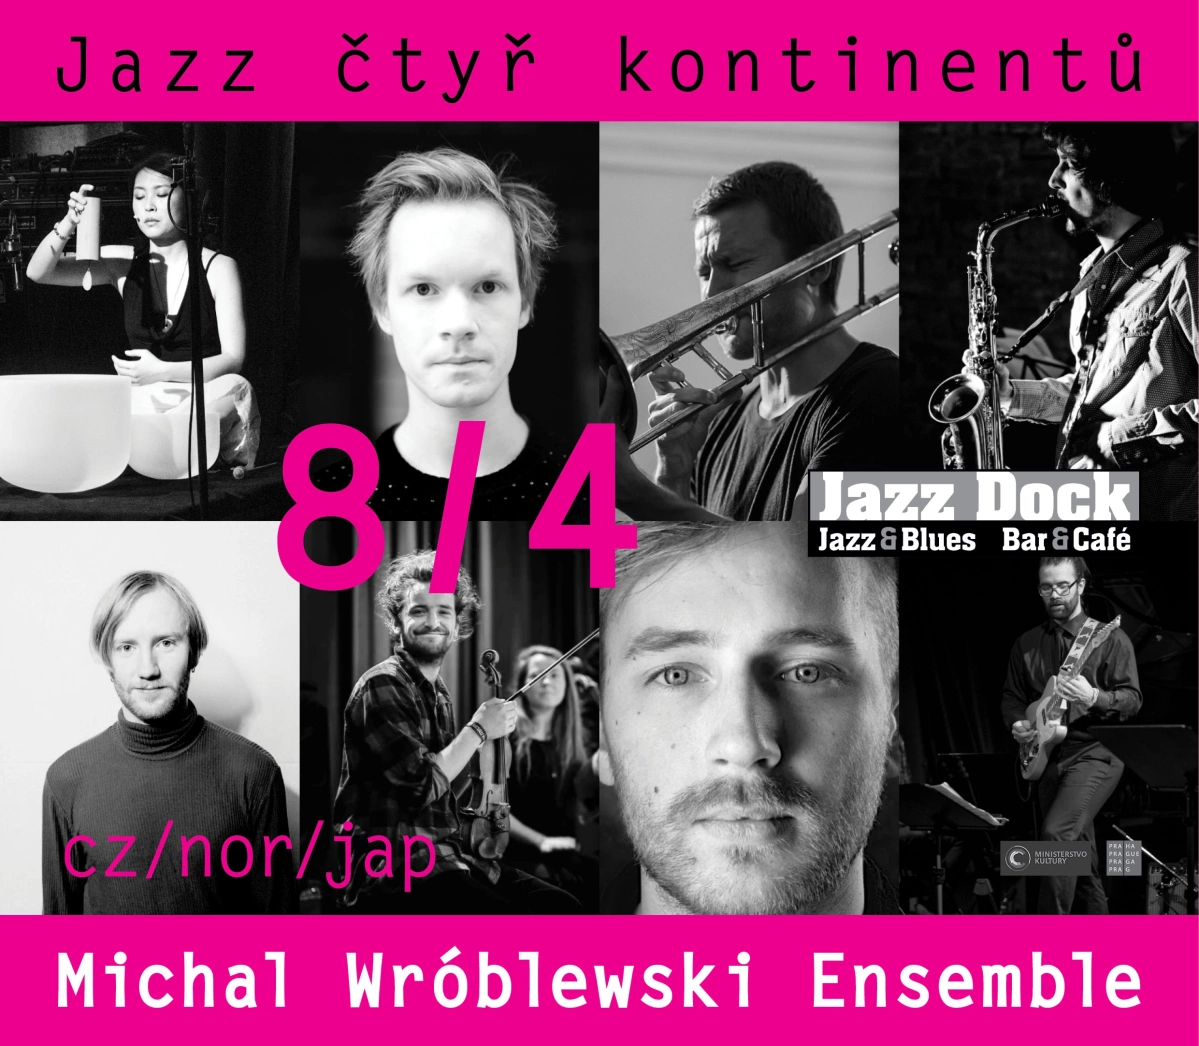 Michal Wróblewski Ensemble (NO/CZ/JAP)